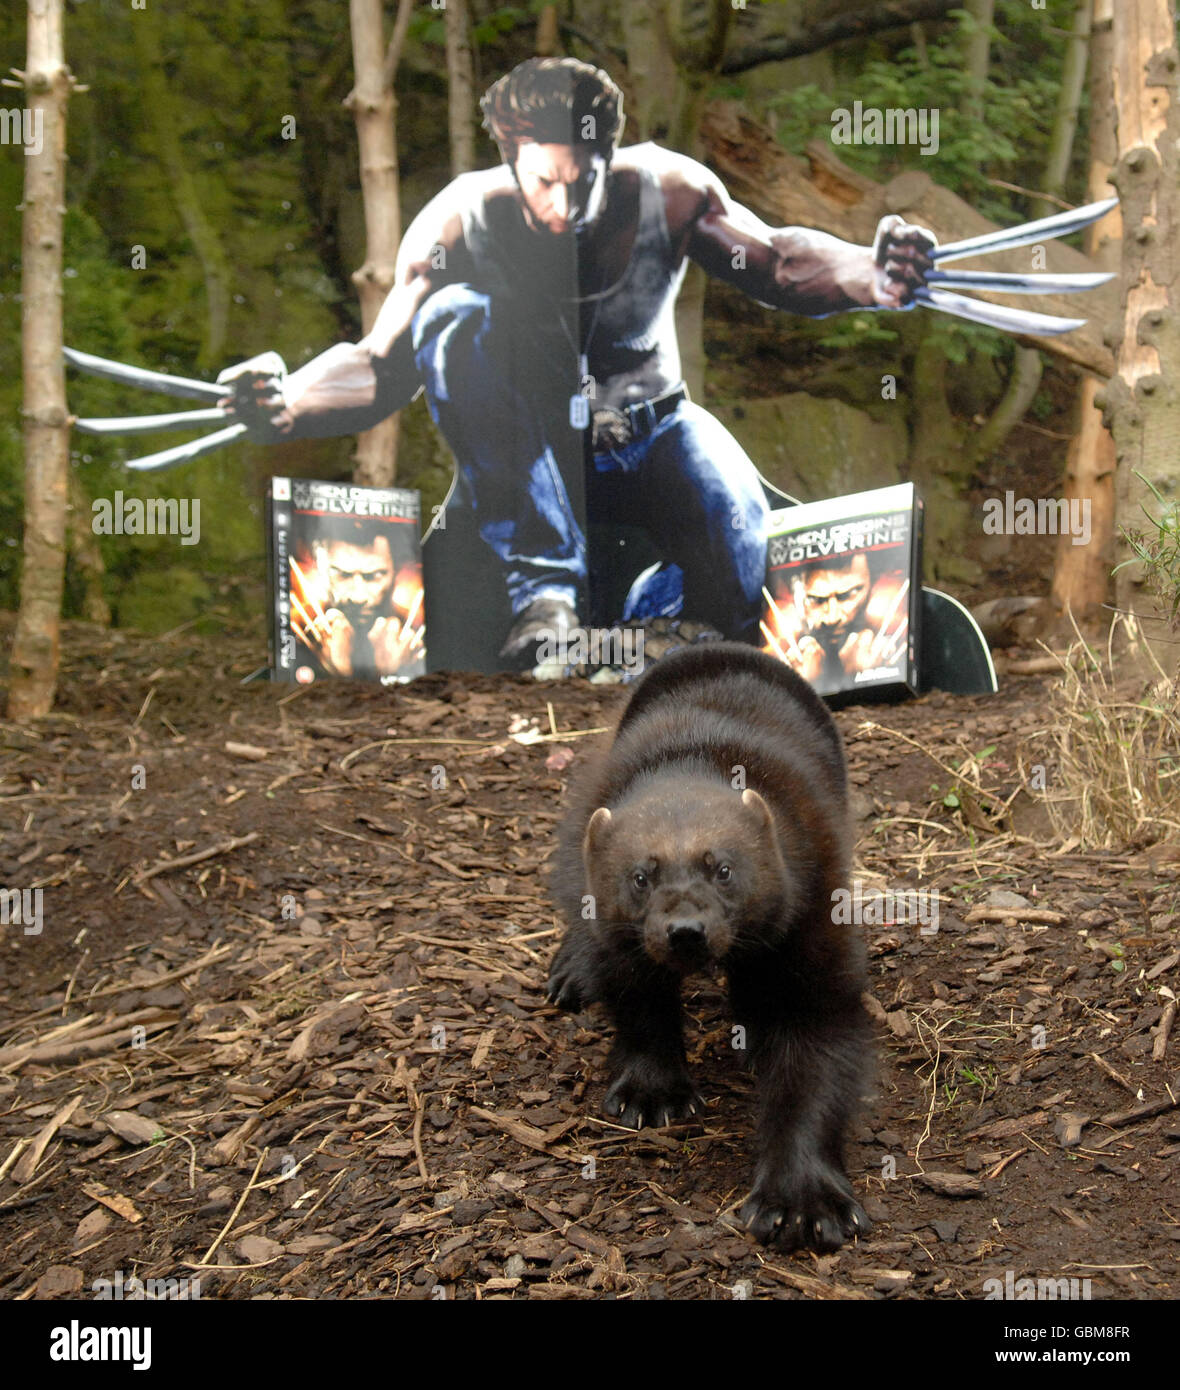 Zur Feier der Markteinführung von X-Men Origins: Wolverine das Videospiel in Großbritannien am 1. Mai sponsert der Spieleverlag Activision die einzige britische Familie von Vielfraßspielern im Edinburgh Zoo in Schottland, wobei der Hauptmann Vielfraß Logan in Bezug auf die Marvel-Figur umbenannt wurde. Stockfoto